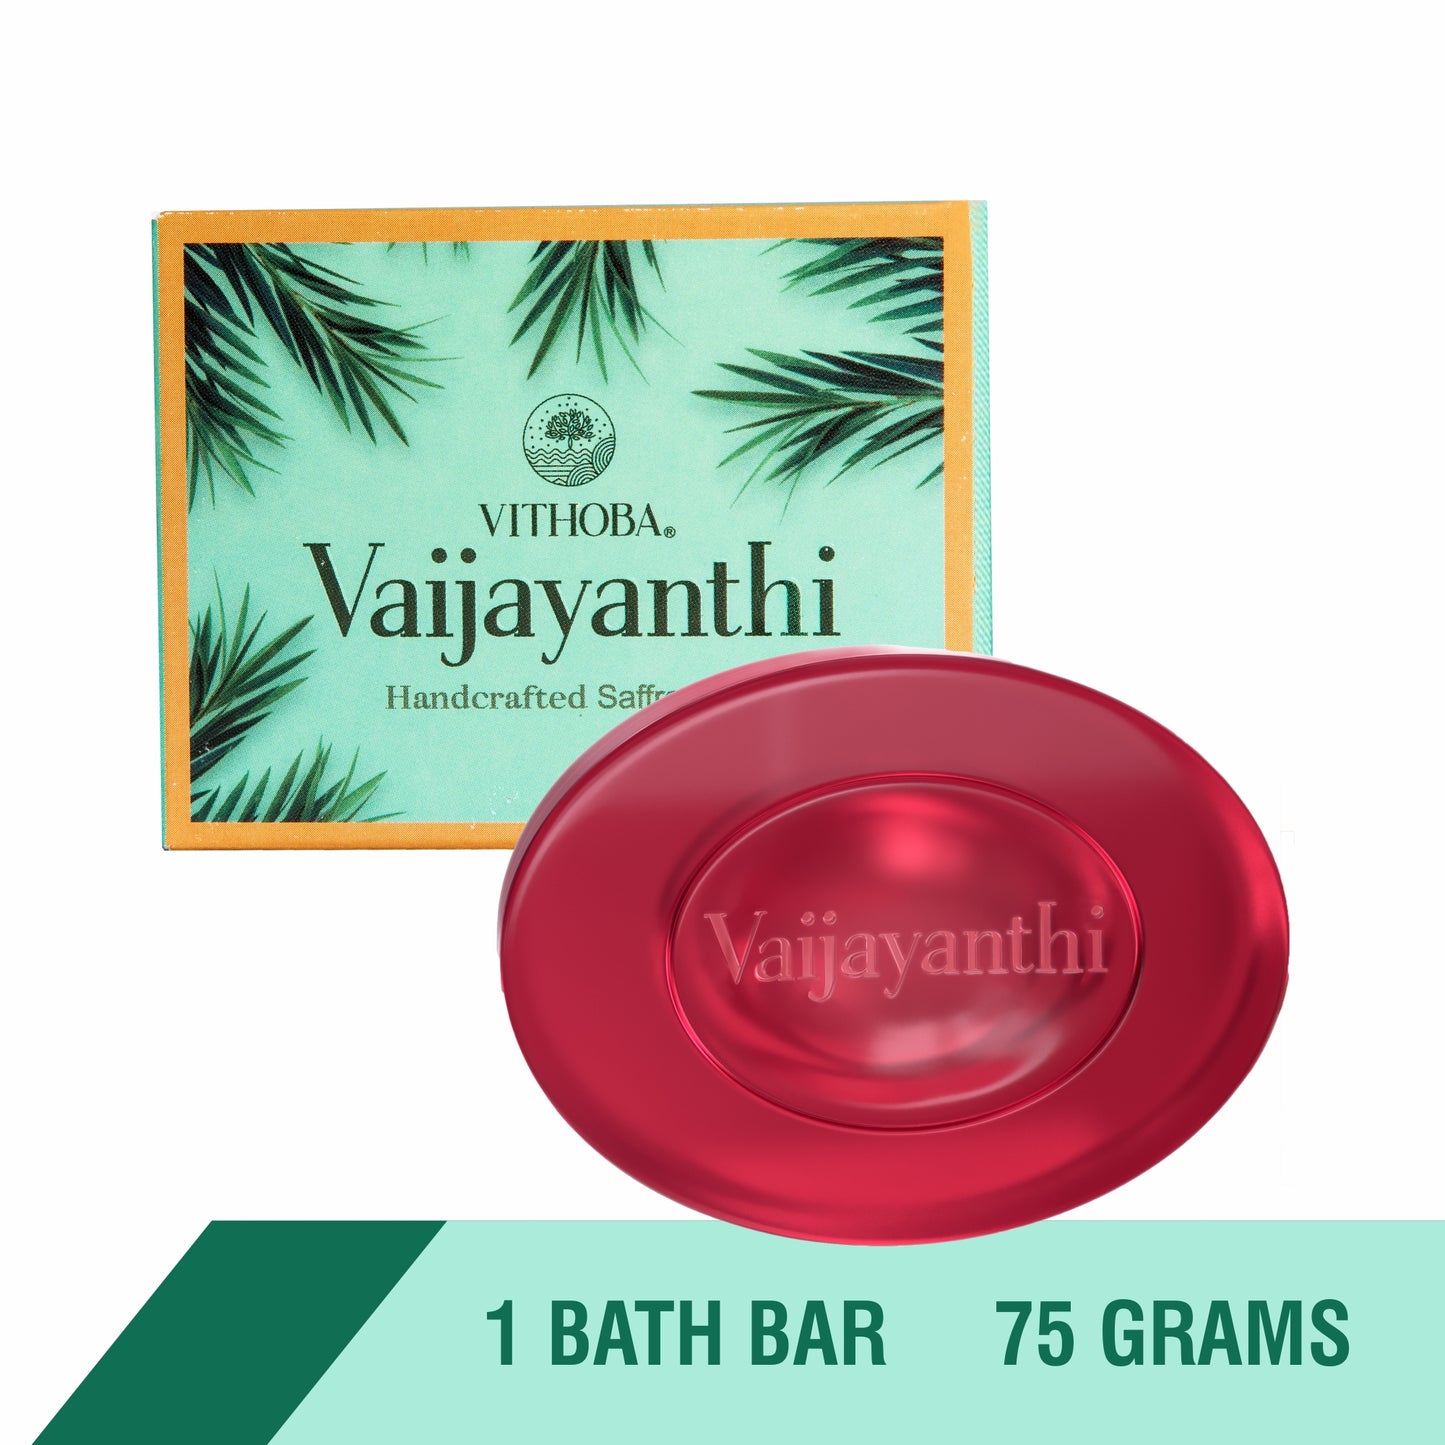 Vithoba Vaijayanthi Handcrafted Saffron Soap Bar & Vithoba Ayurvedic Rootfix Toothpaste Combo Pack - 40g+75g